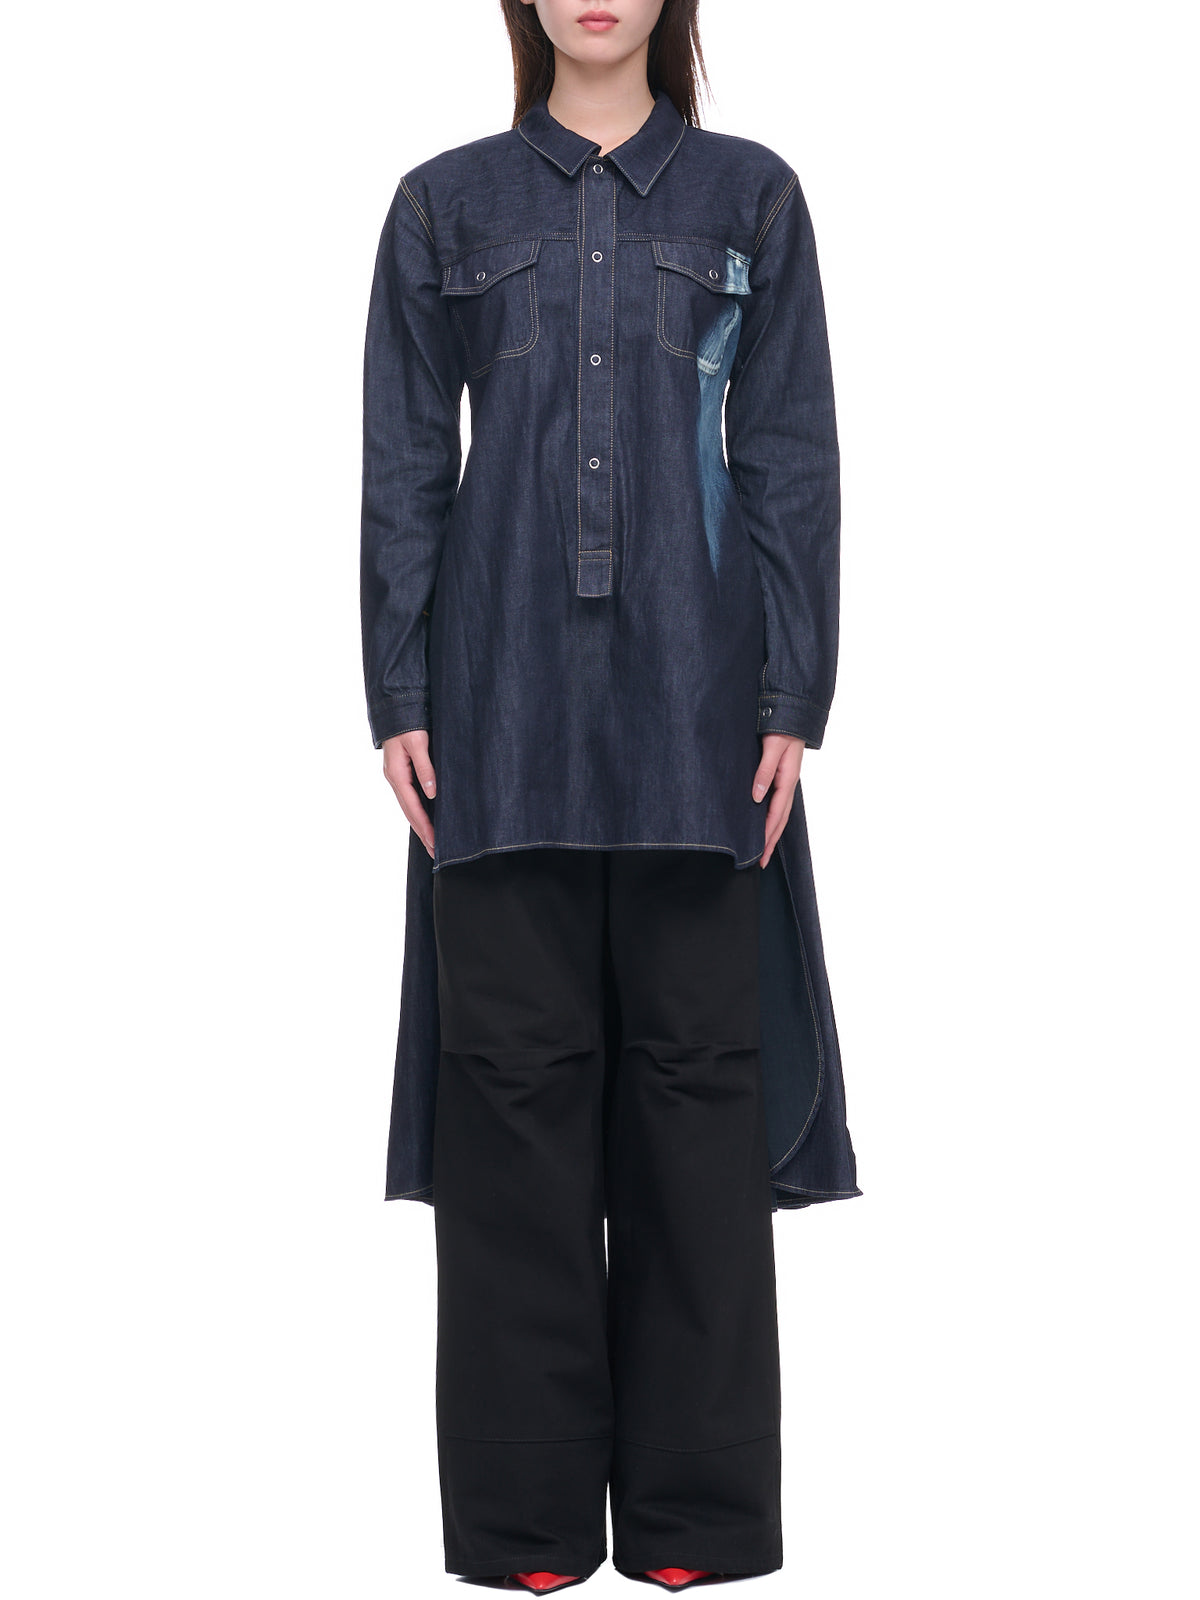 Denim Button Up Shirt Dress (FE-D03-011-1-NAVY-BLUE)